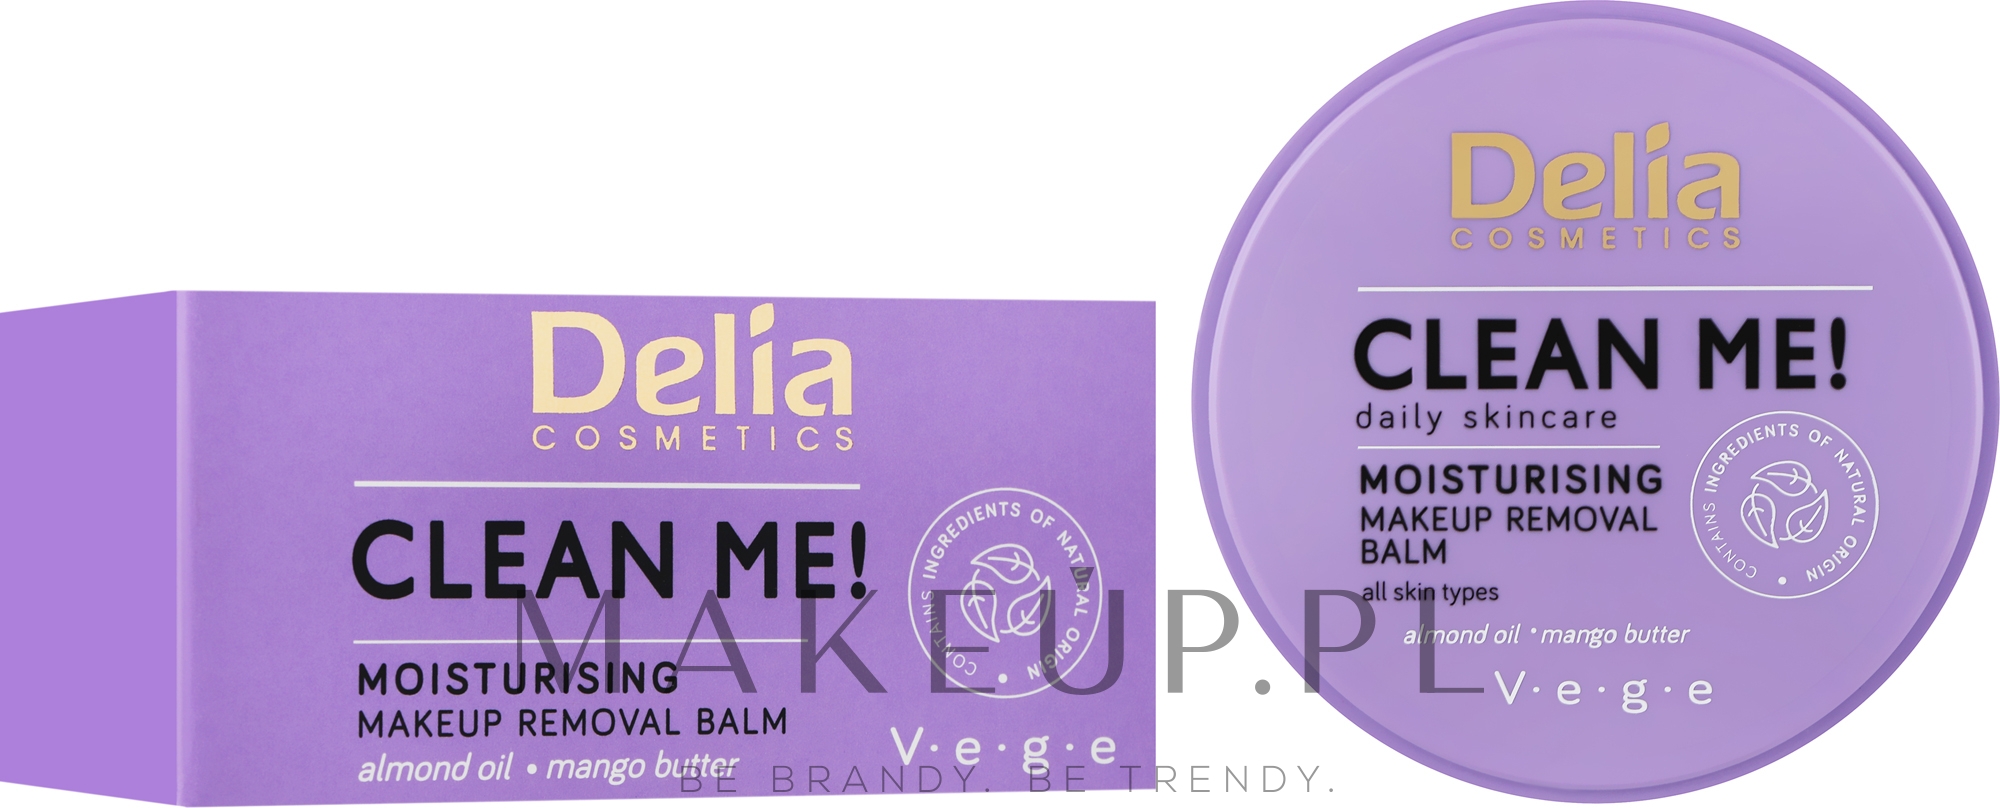 Nawilżający balsam do demakijażu - Delia Clean Me Moisturizing Makeup Remover  — Zdjęcie 40 g